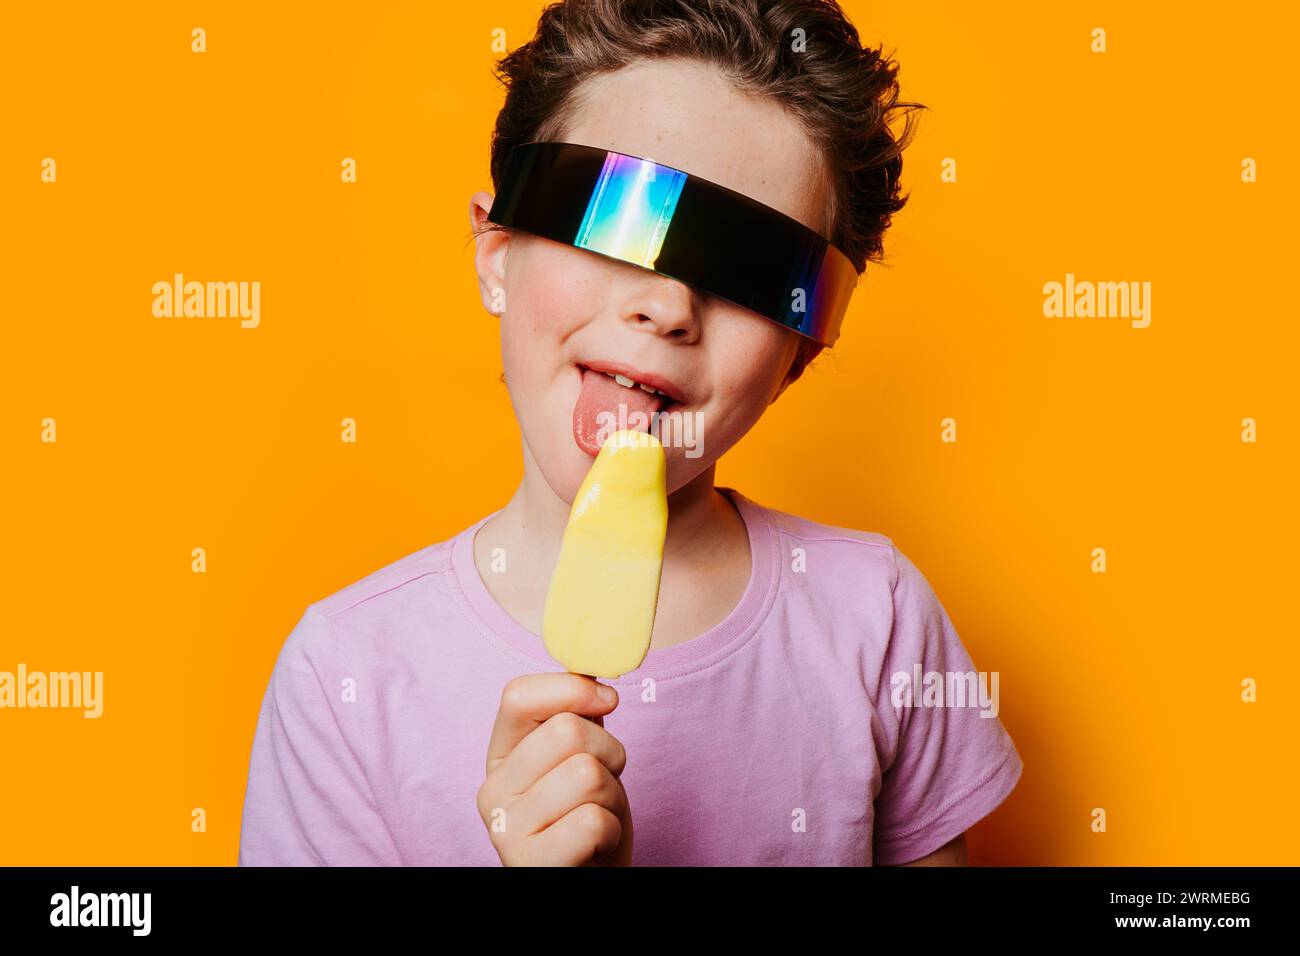 Ein kleines Kind mit reflektierender, futuristischer Sonnenbrille genießt ein gelbes Eis vor einem leuchtend orangefarbenen Hintergrund, das ein Gefühl von Sommerspaß vermittelt Stockfoto